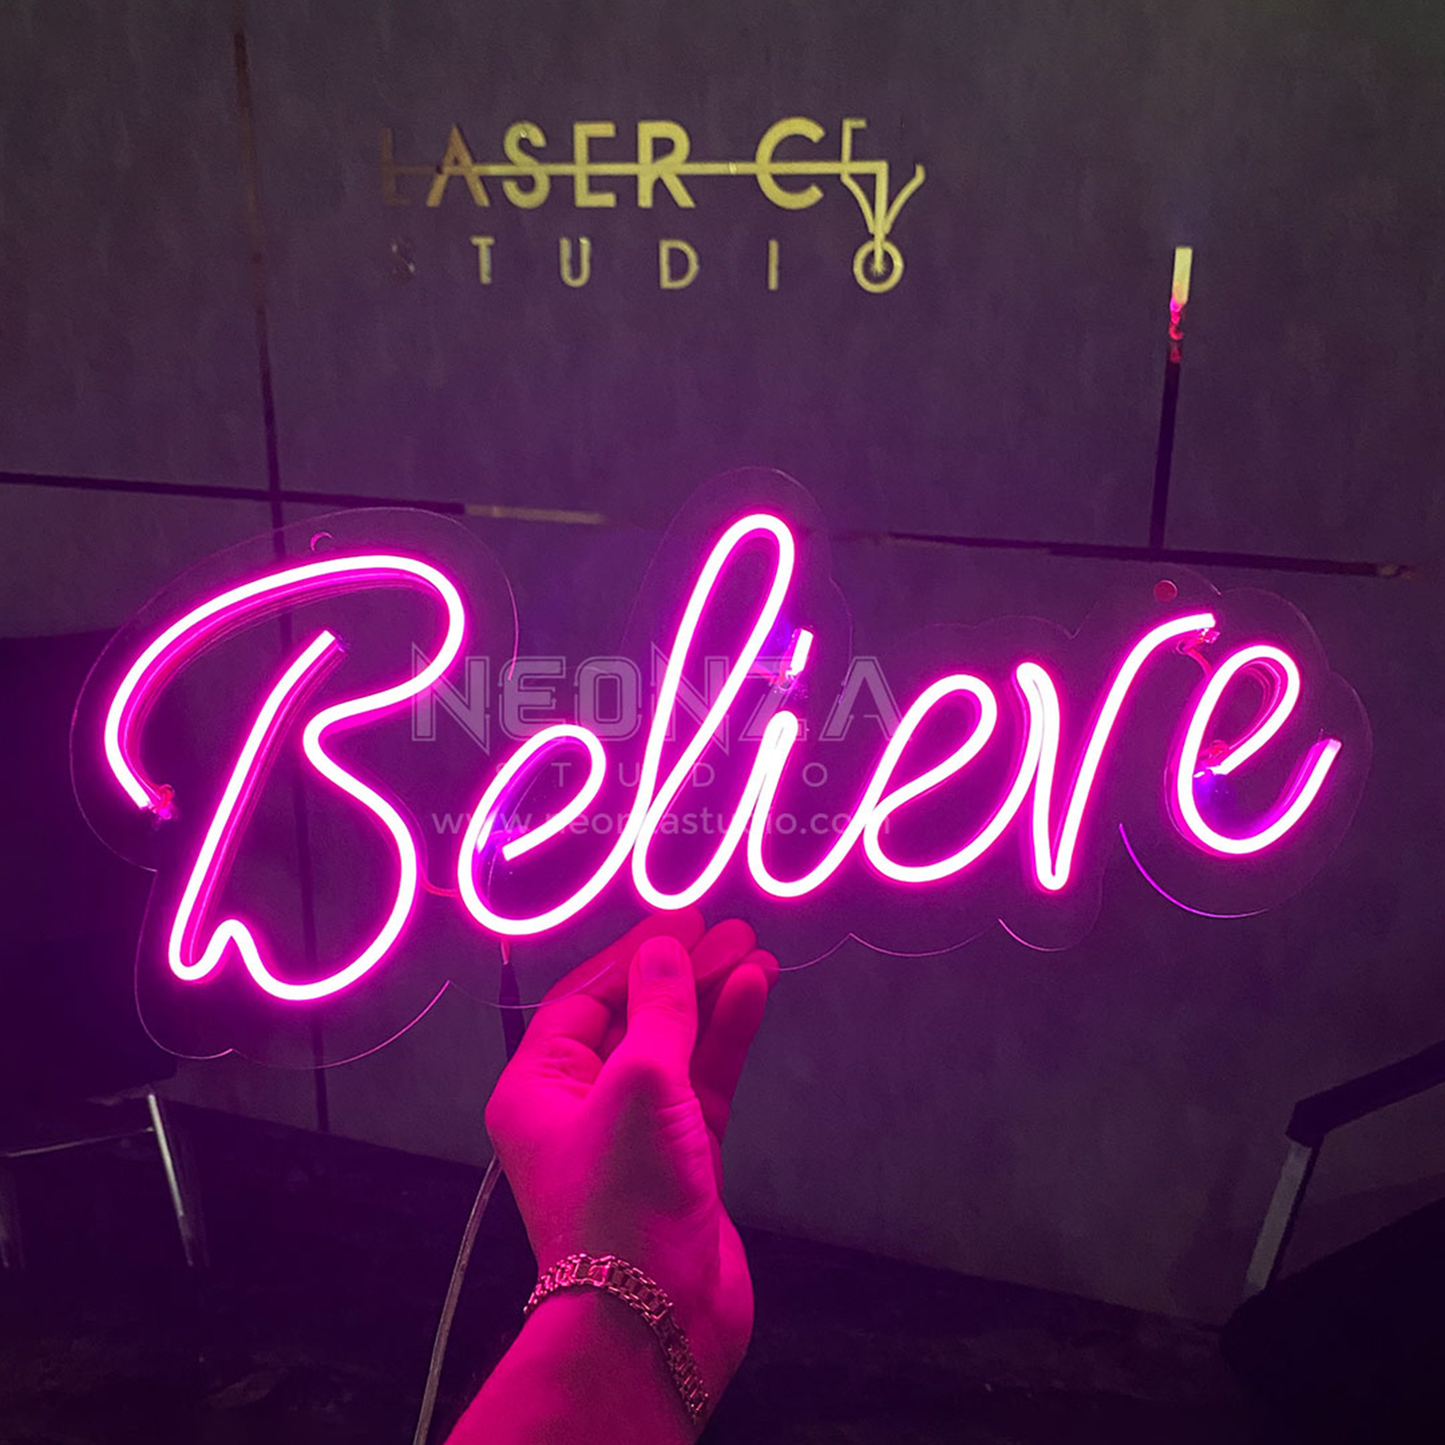 believe-neon-sign